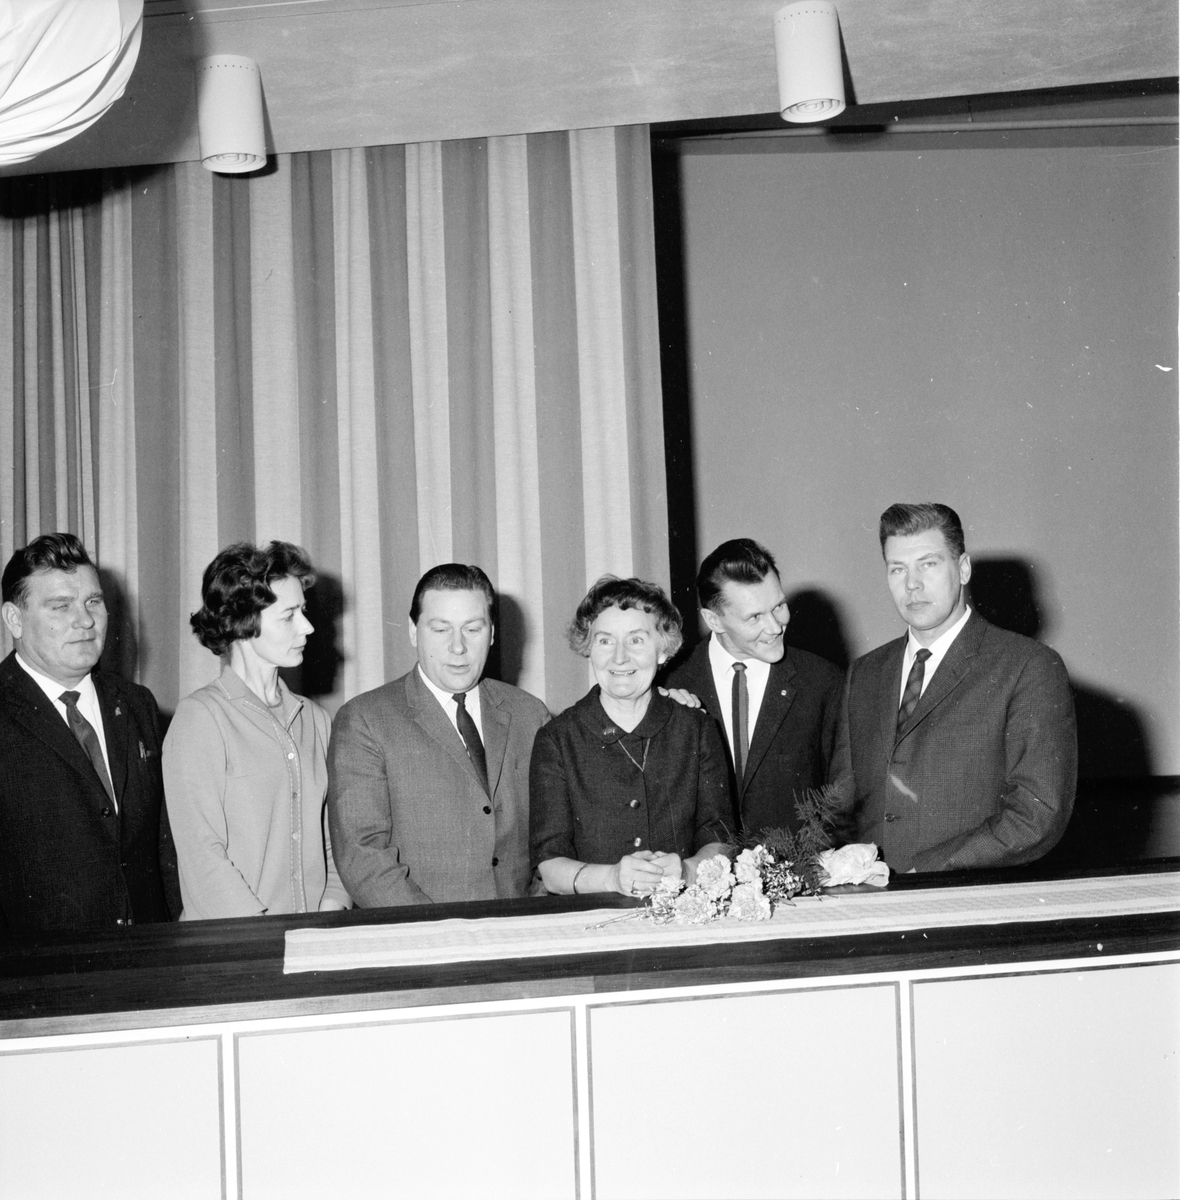 Turistföreningen halvårsmöte i Arbrå,
Willy Maria Lundberg,
8 December 1963